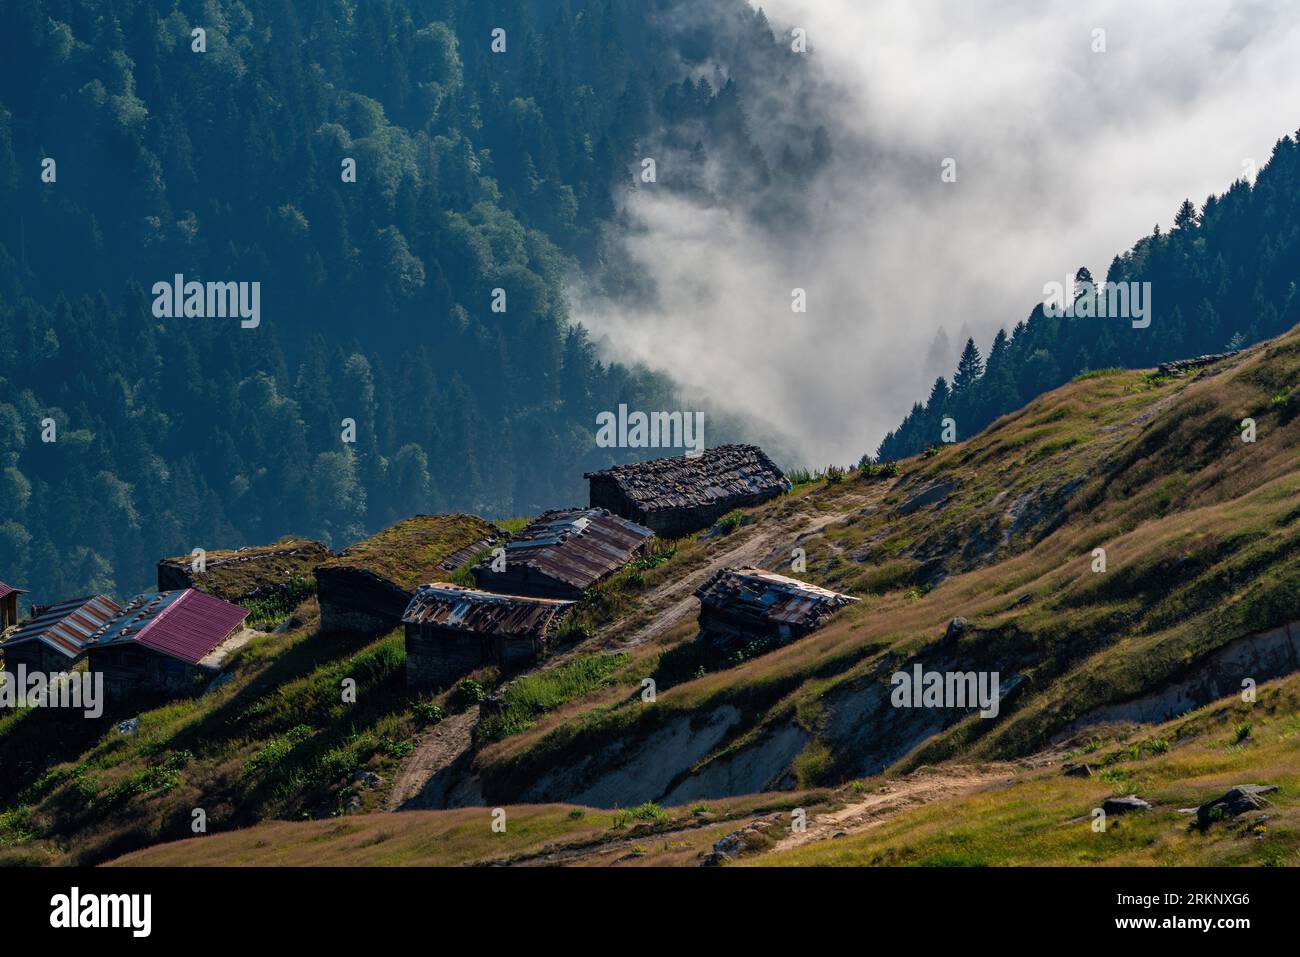 Coníferas de hoja perenne y casas de Yayla en una ladera de montaña boscosa en un valle bajo niebla en Turquía Foto de stock